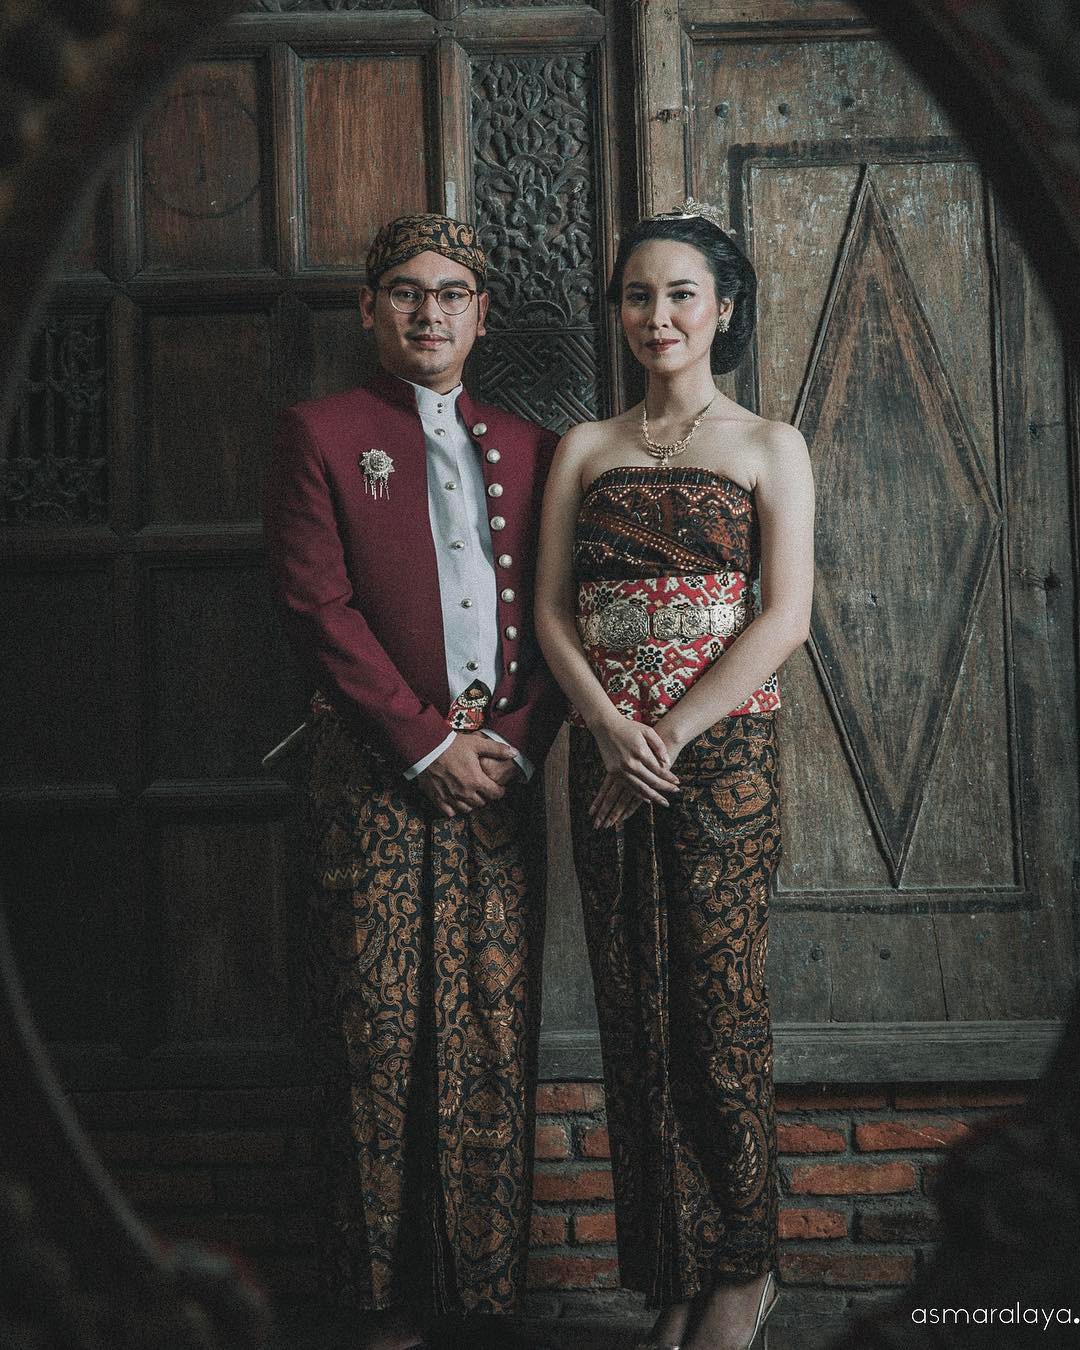 15 Foto Prewedding Sakral Dengan Pakaian Adat Indonesia Mau Coba